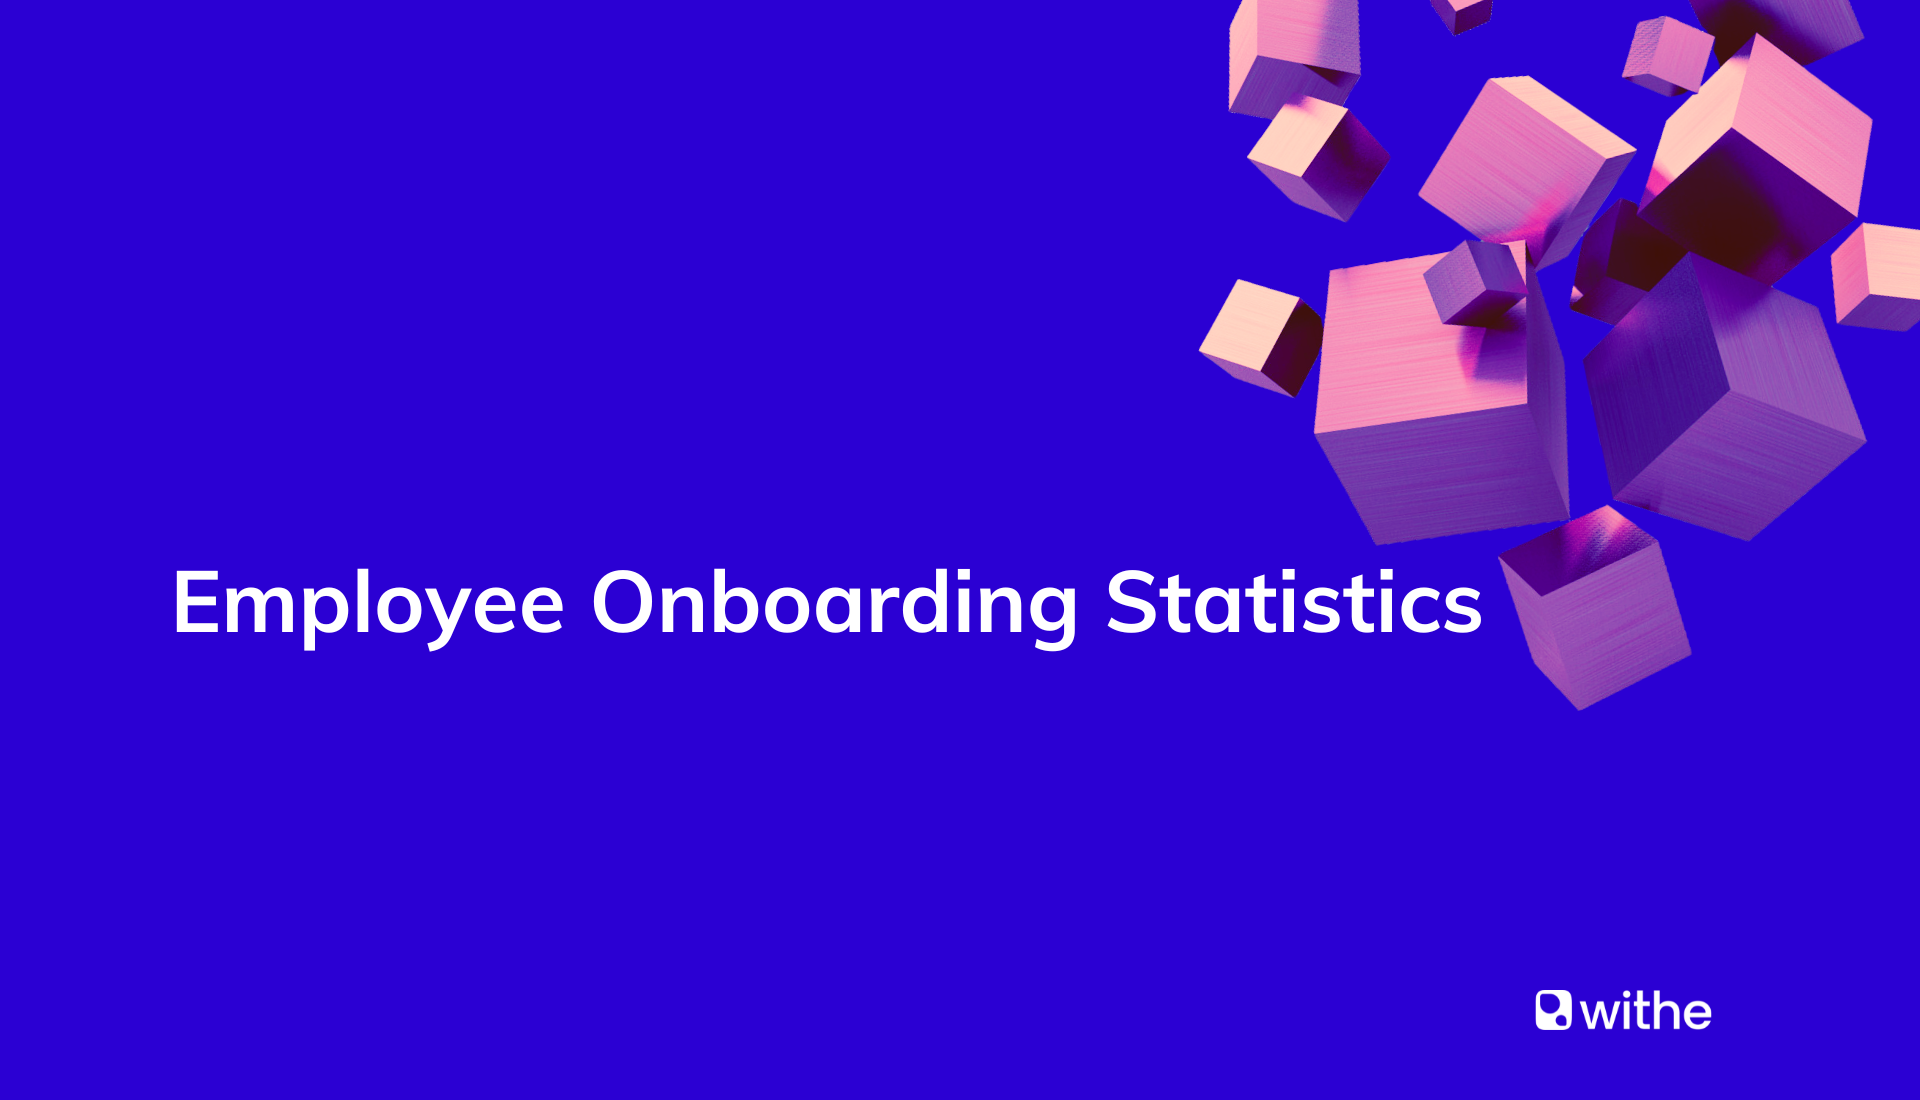 Employee onboarding statistics report